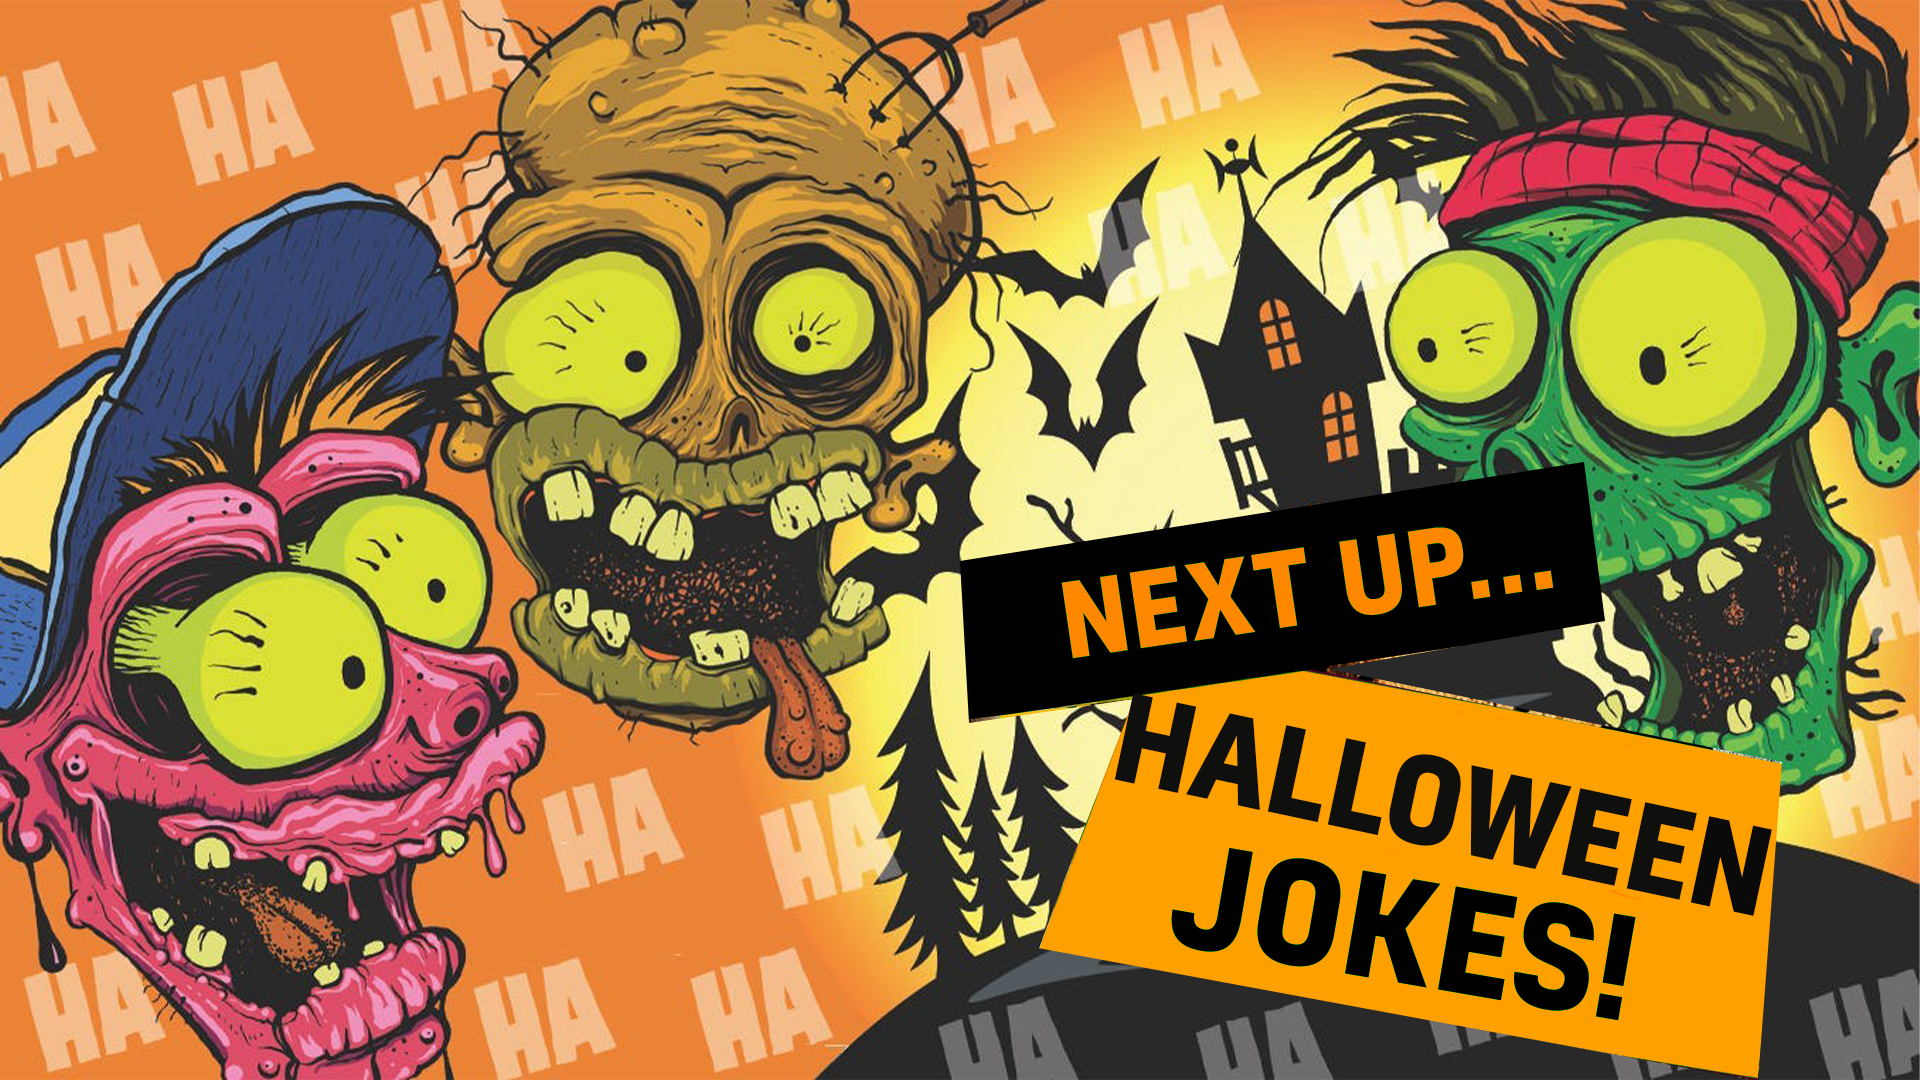 Next up halloween jokes